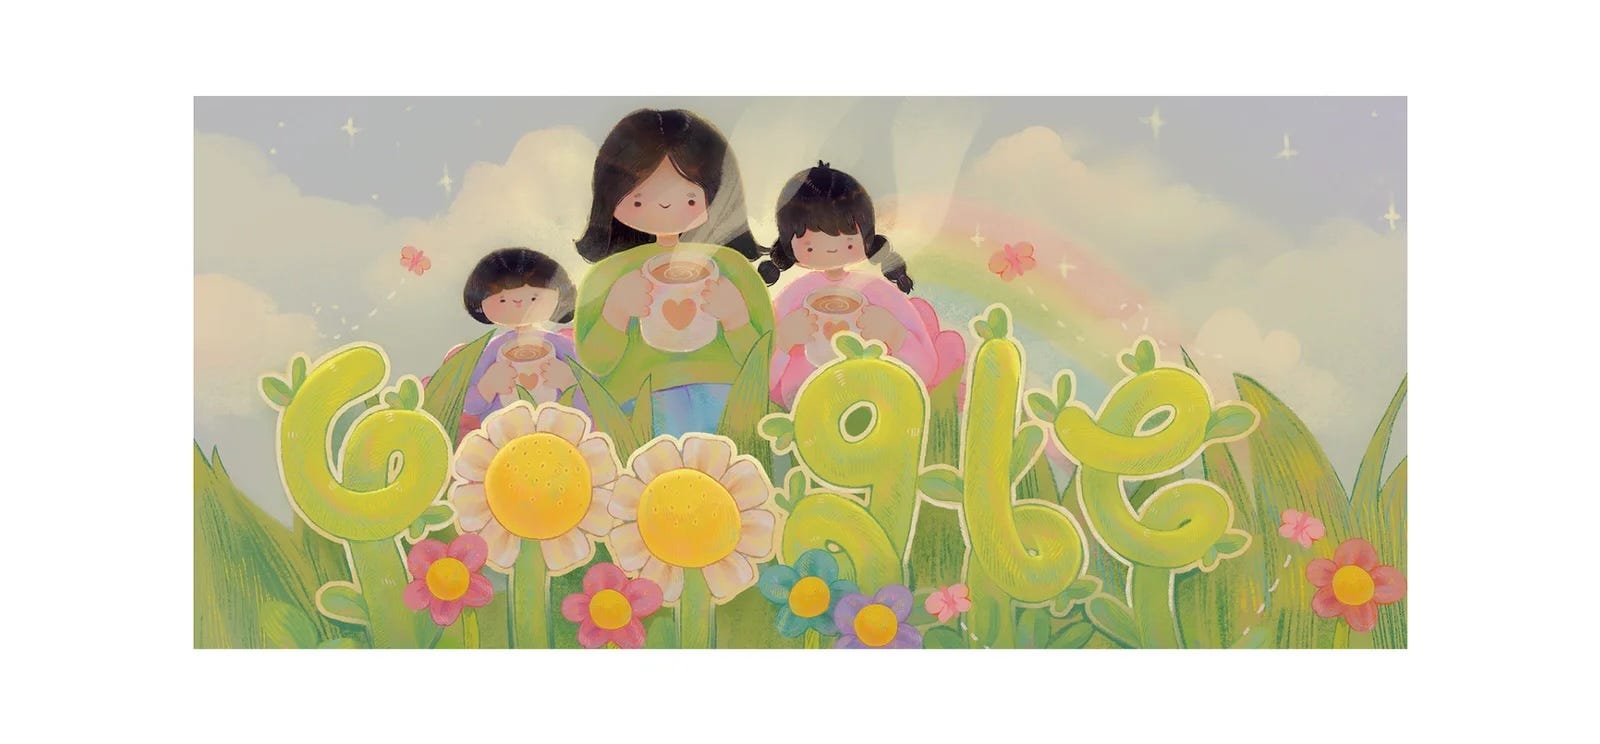 Der Gewinnerbeitrag des Google Doodle war ein Google-Logo aus Ranken und Blumen mit Cartoon-Darstellungen von drei jungen Mädchen, die heiße Getränke schlürfen.